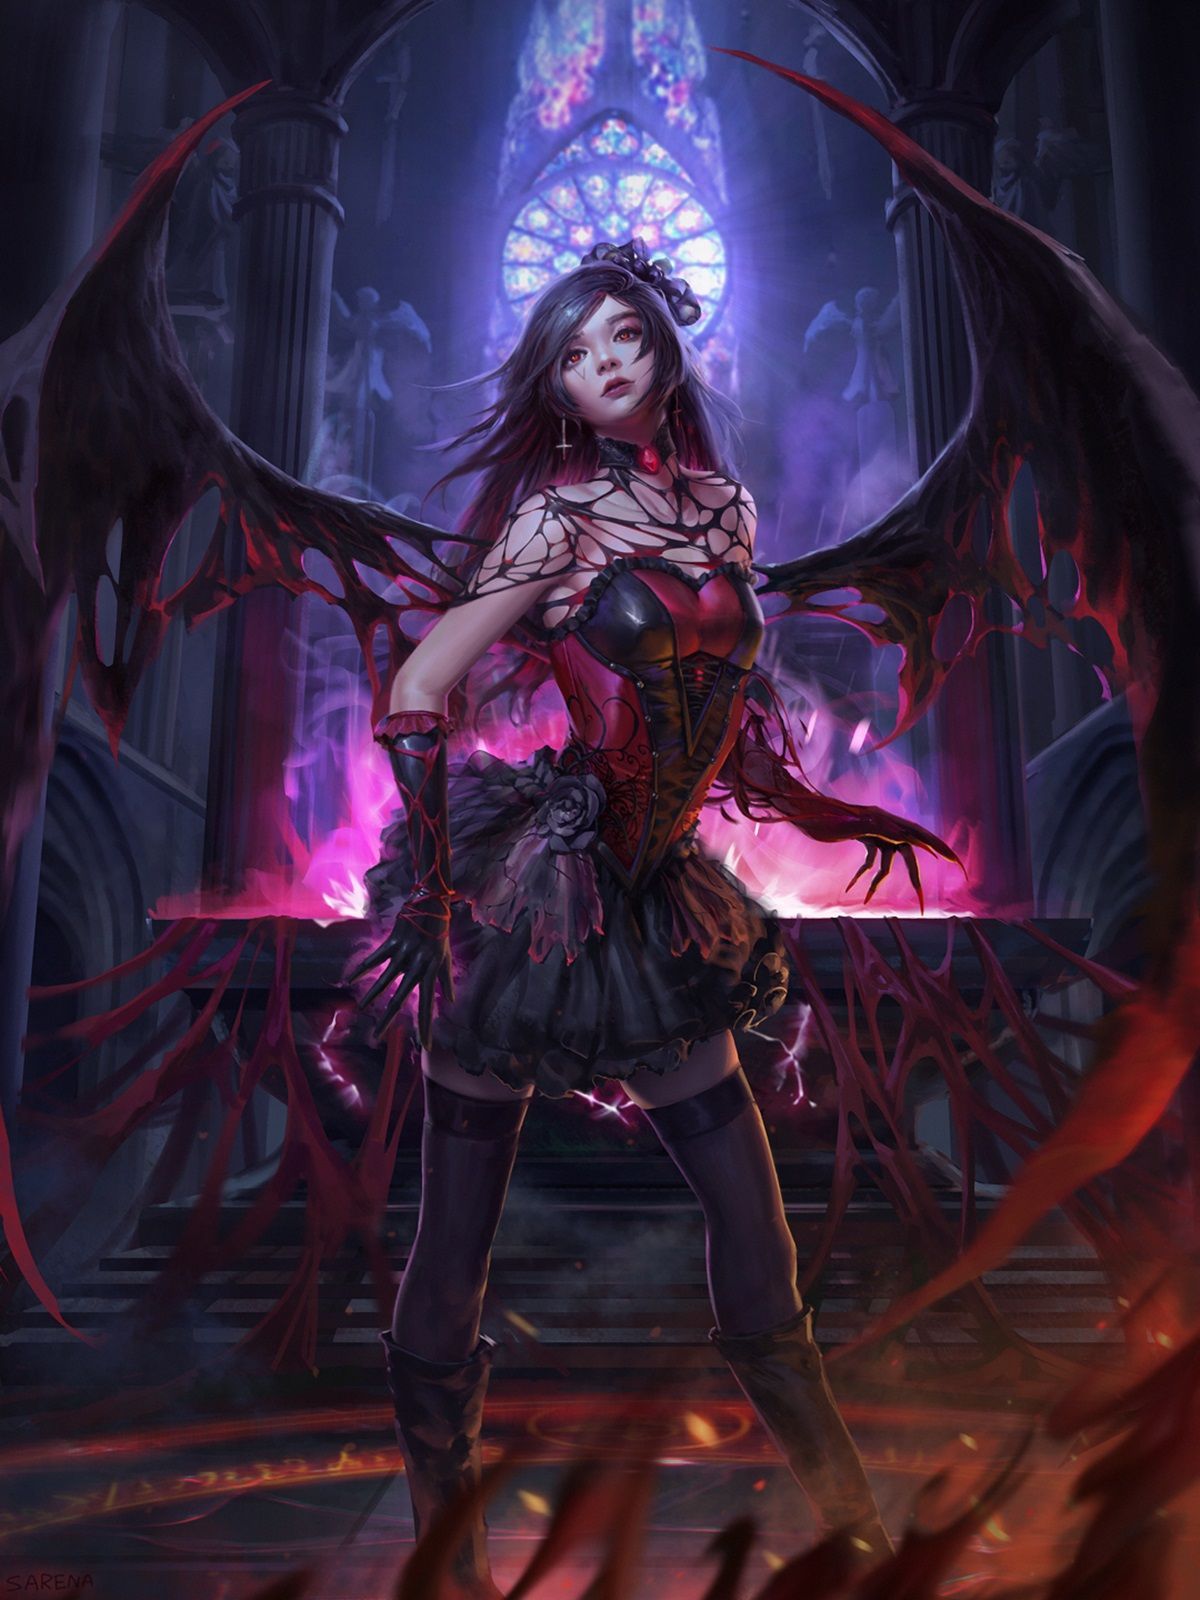 Primary image for Demon Zaehira! Master Manipulator. Control anyone. Haunted Satanic Demonic